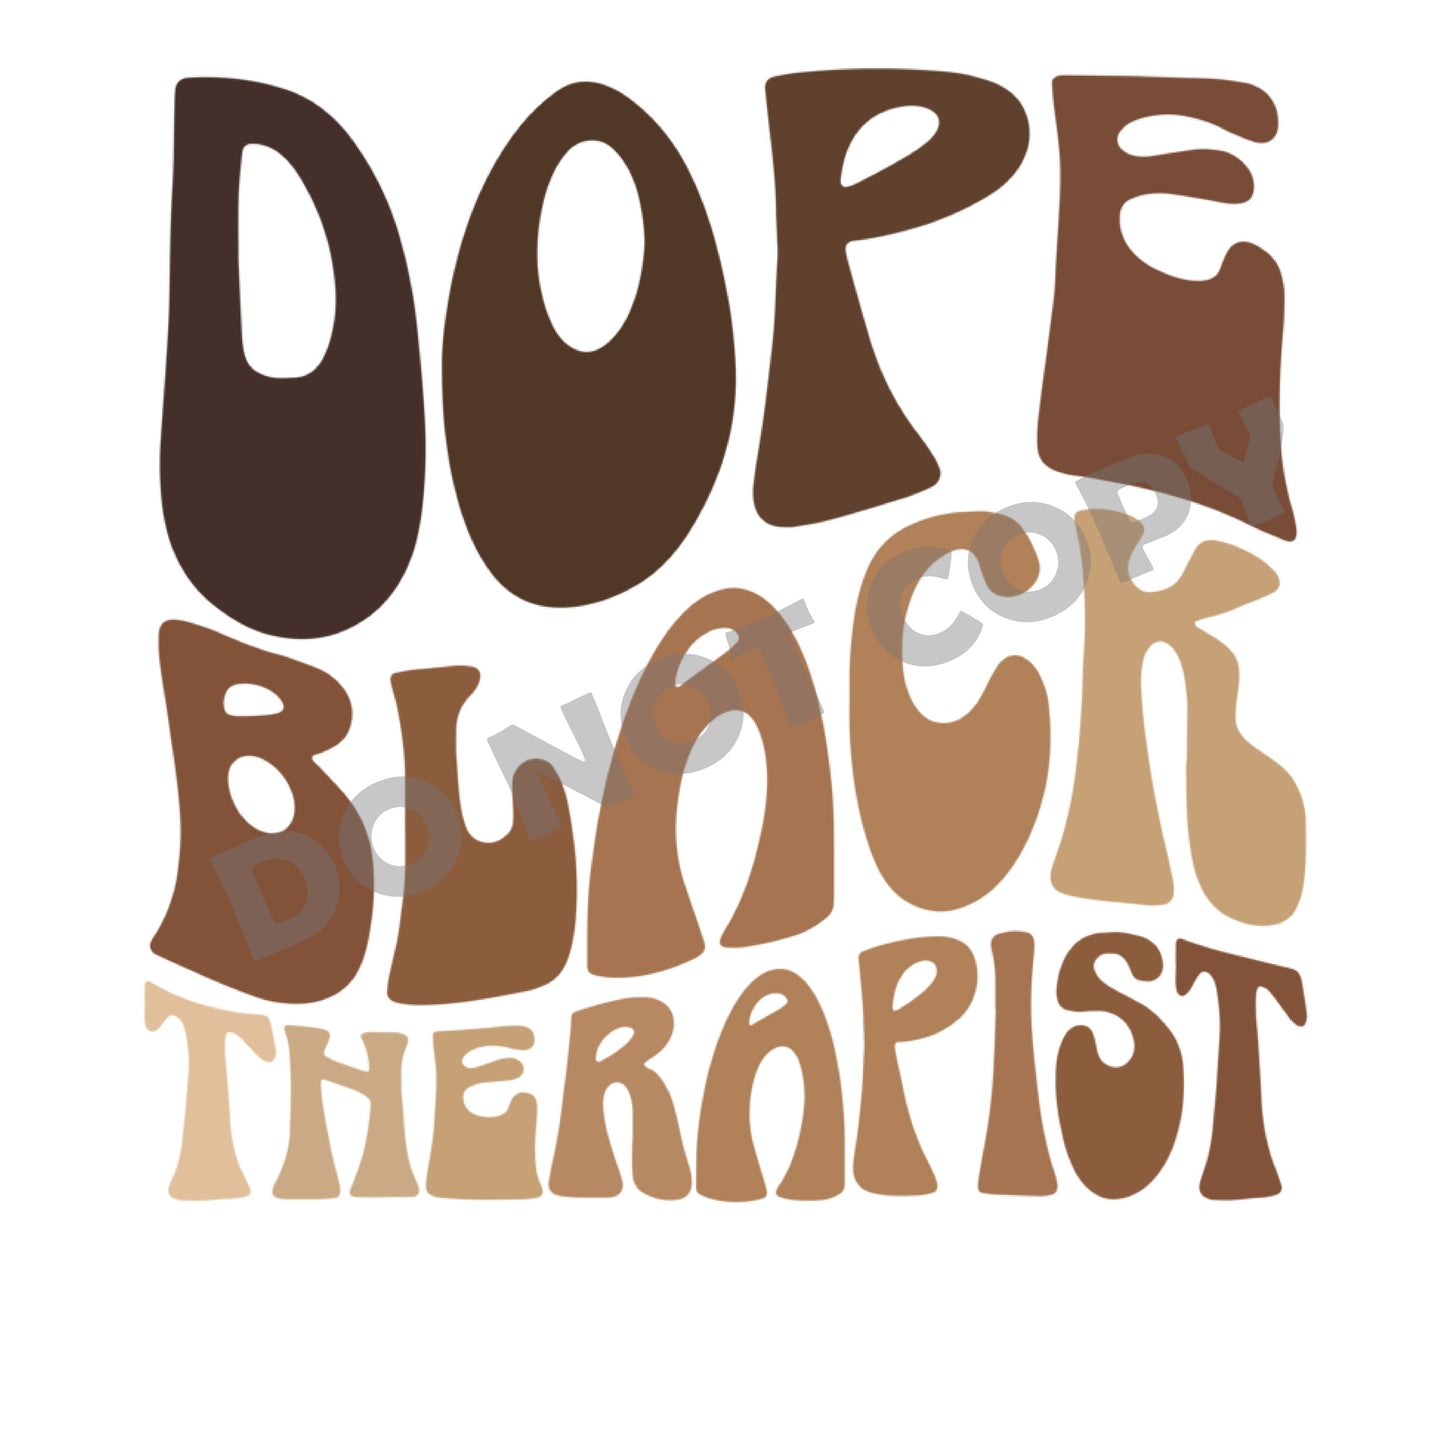 Dope Black Therapist -DTF Transfer